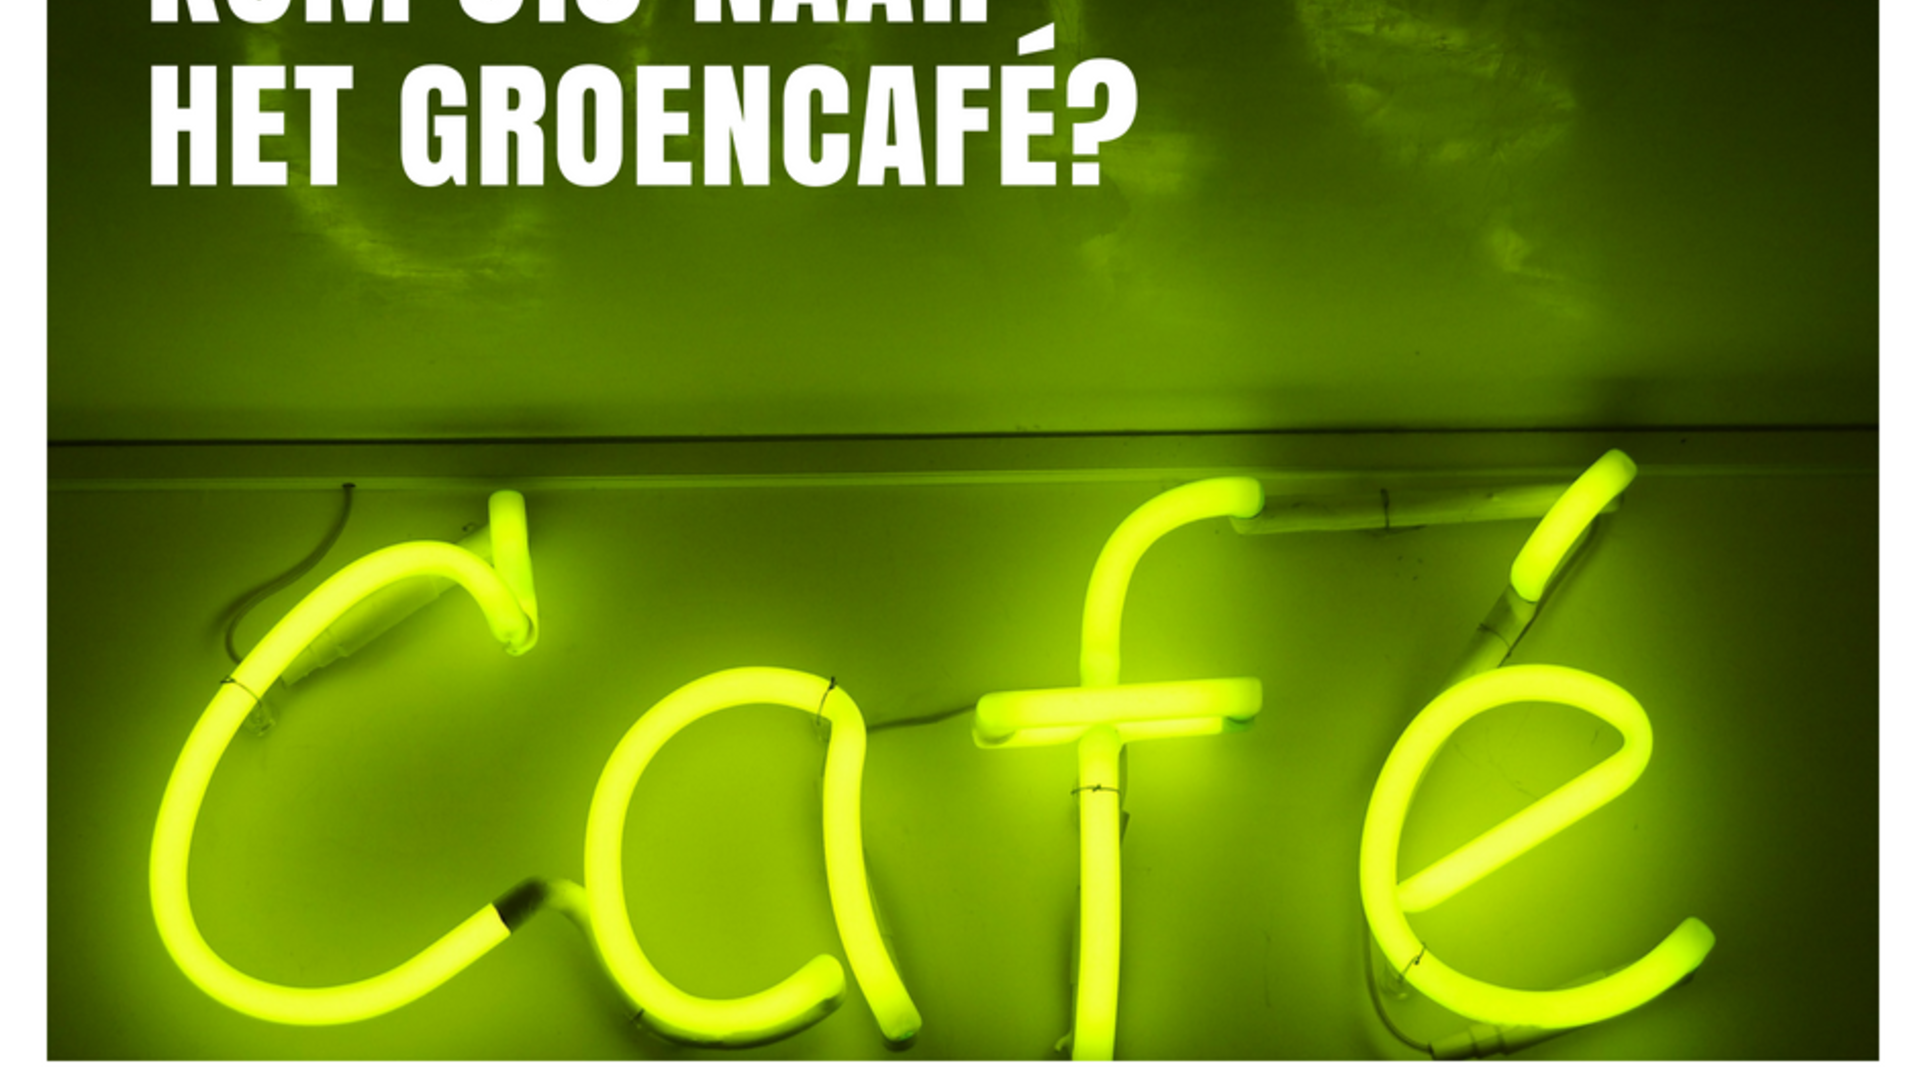 Groencafé